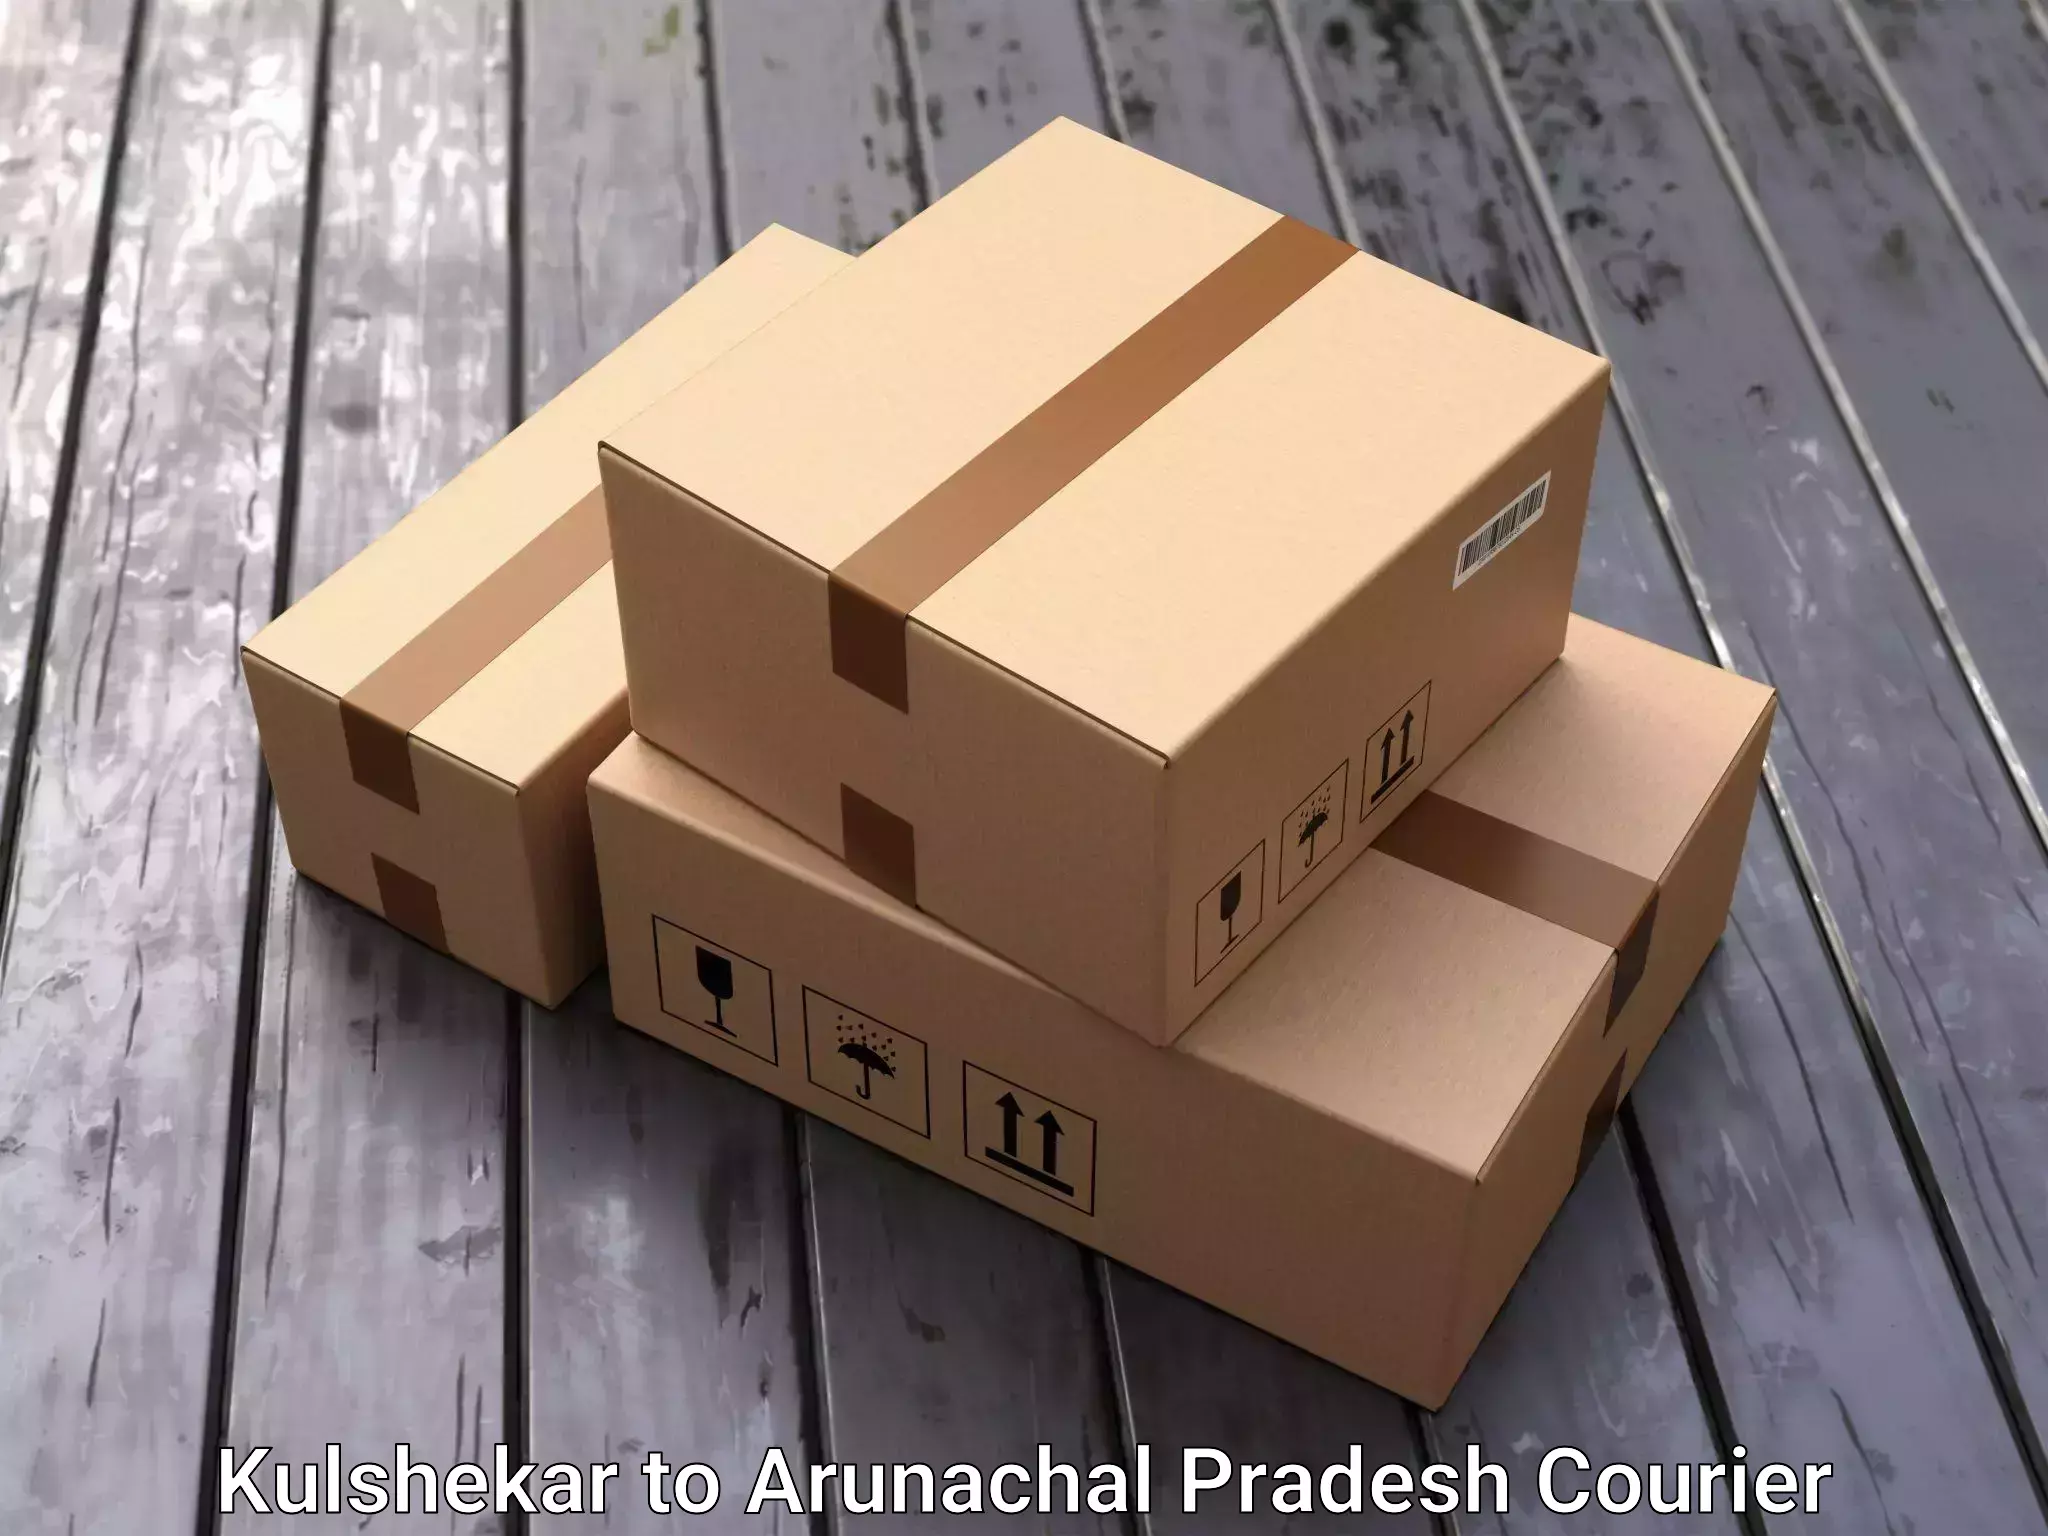 Furniture moving experts in Kulshekar to Arunachal Pradesh